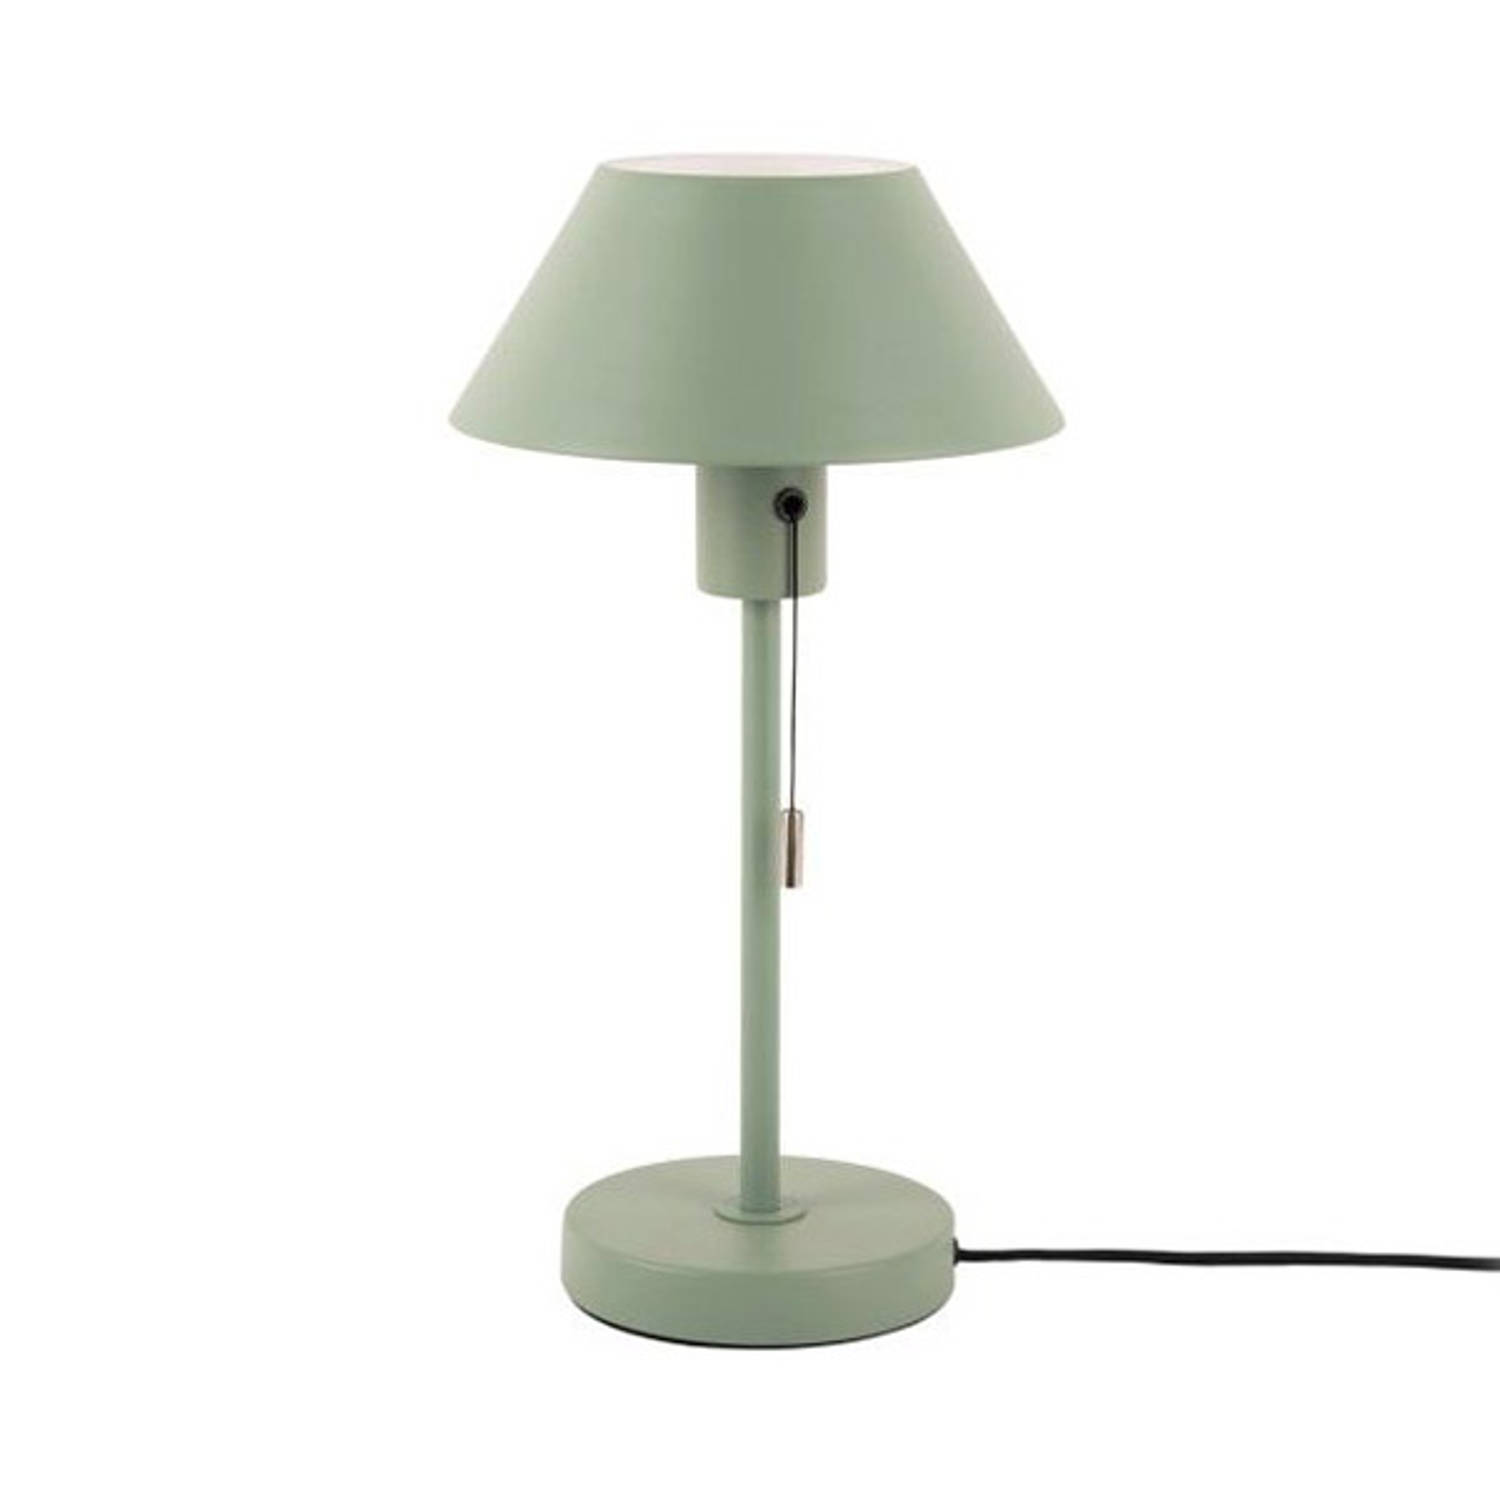 Leitmotiv Table lamp Office Retro metal grayed jade